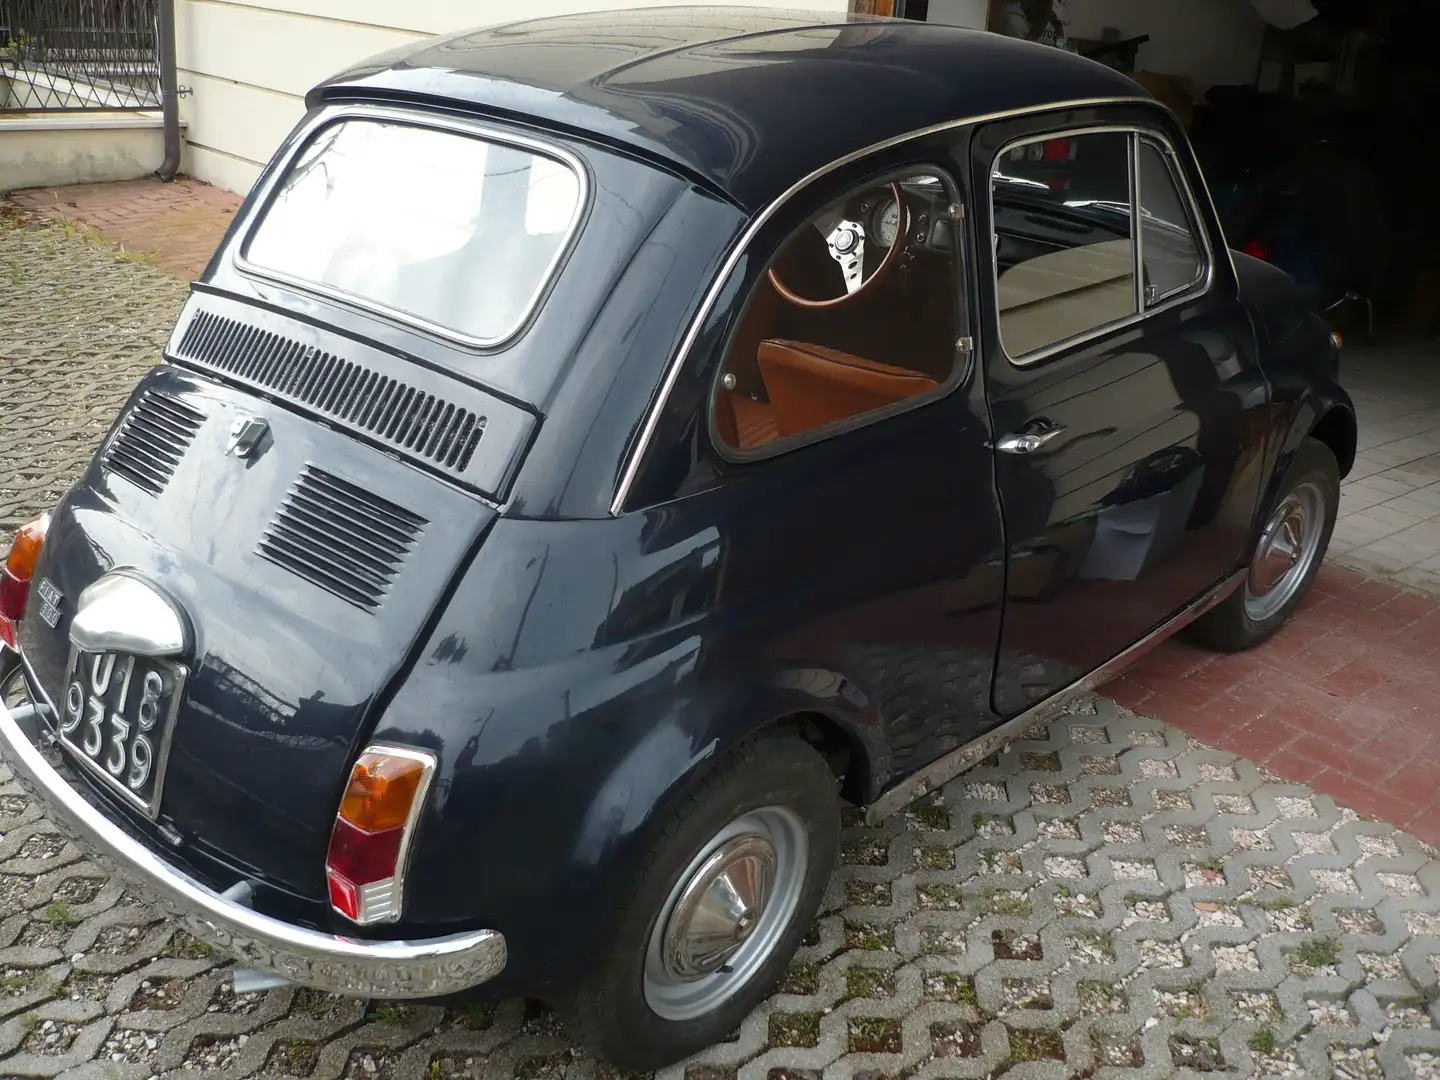 Fiat 500 lombardi my car - 2